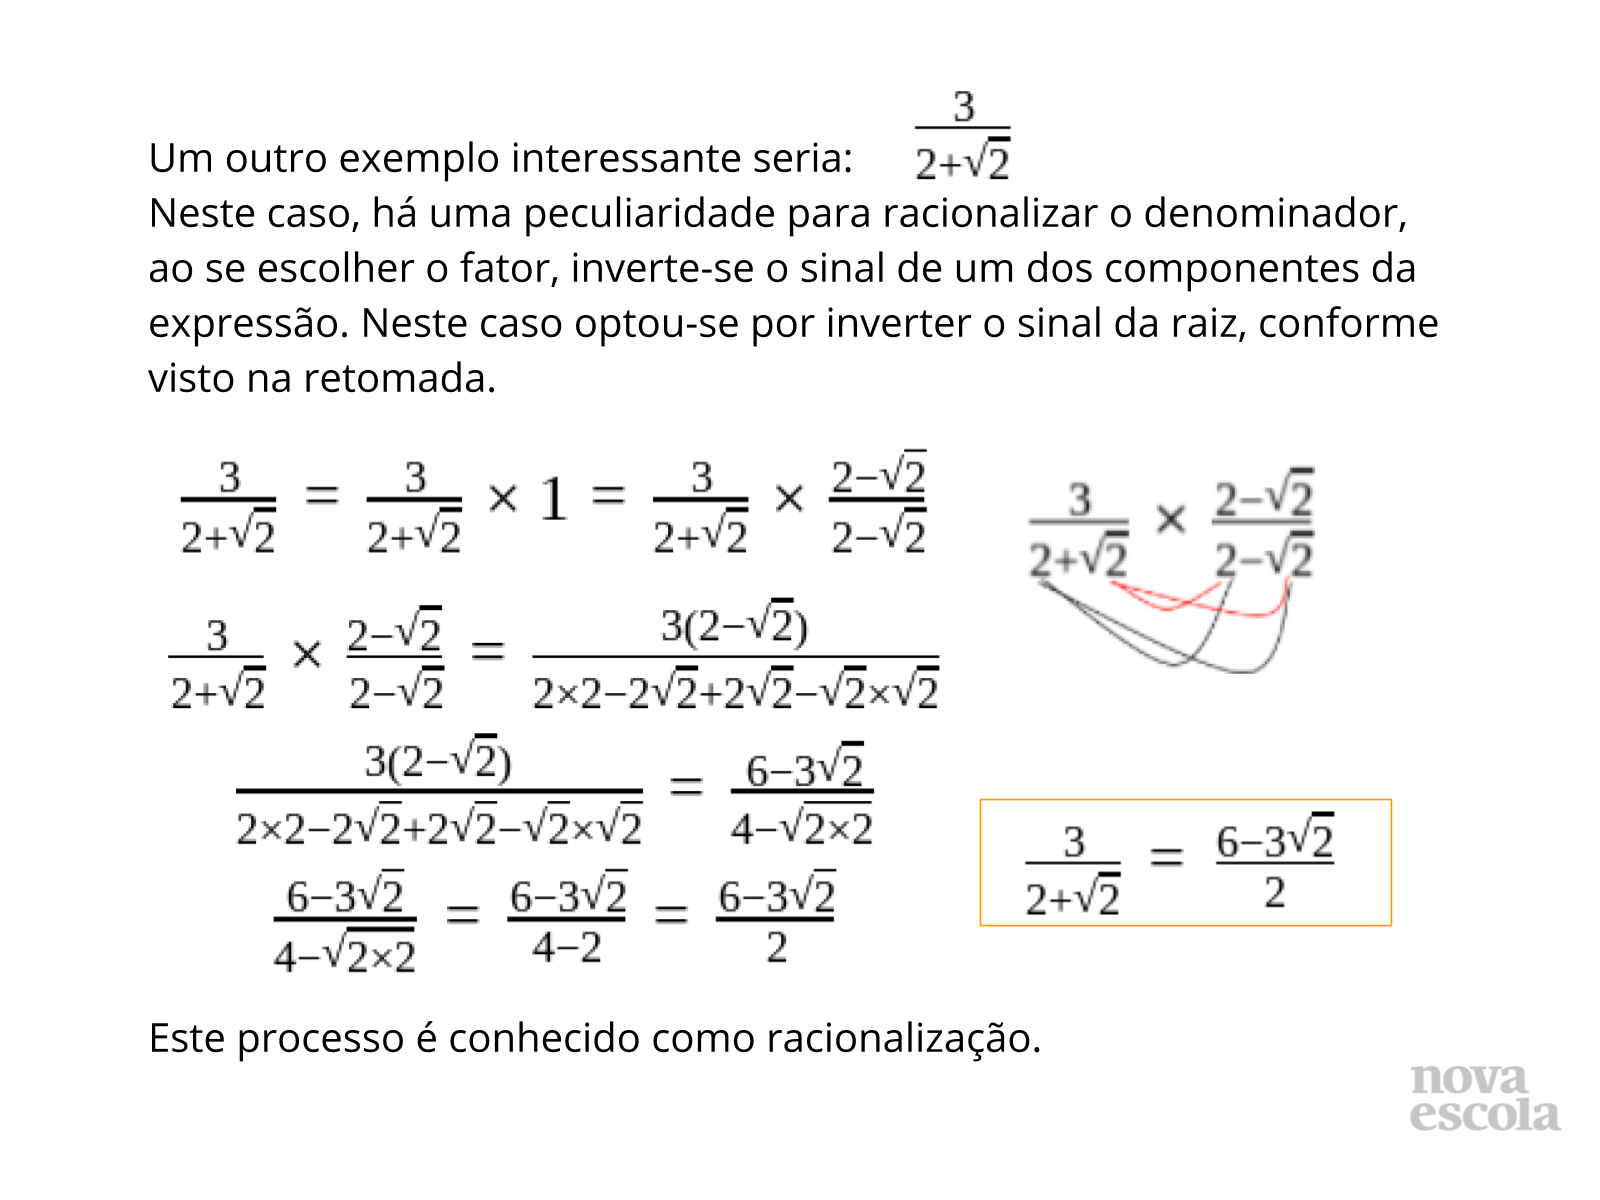 Atividade de matemática: Simplificação de fração - 5º ou 6º ano - Acessaber